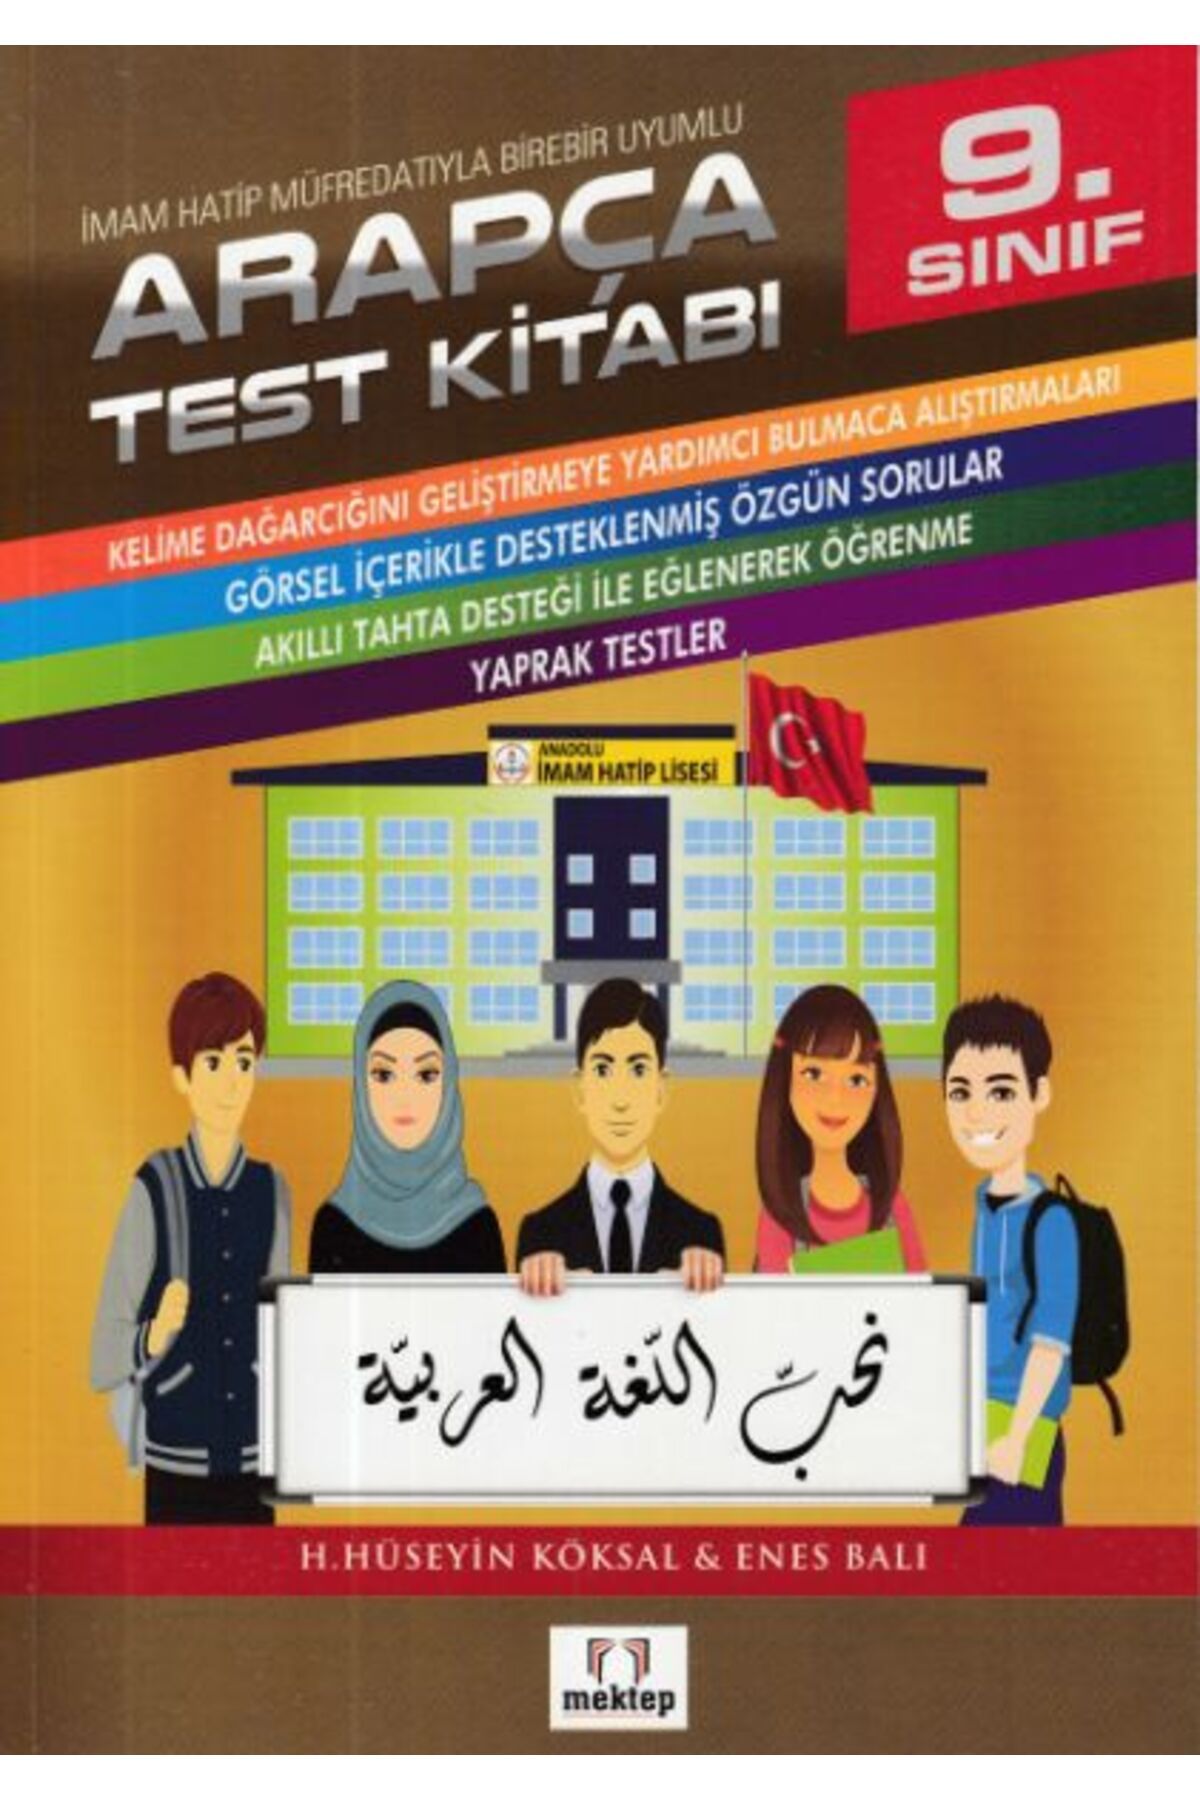 Mektep Yayınları 9.Sınıf Arapça Test Kitabı İmam Hatip Müfredatıyla Birebir Uyumlu